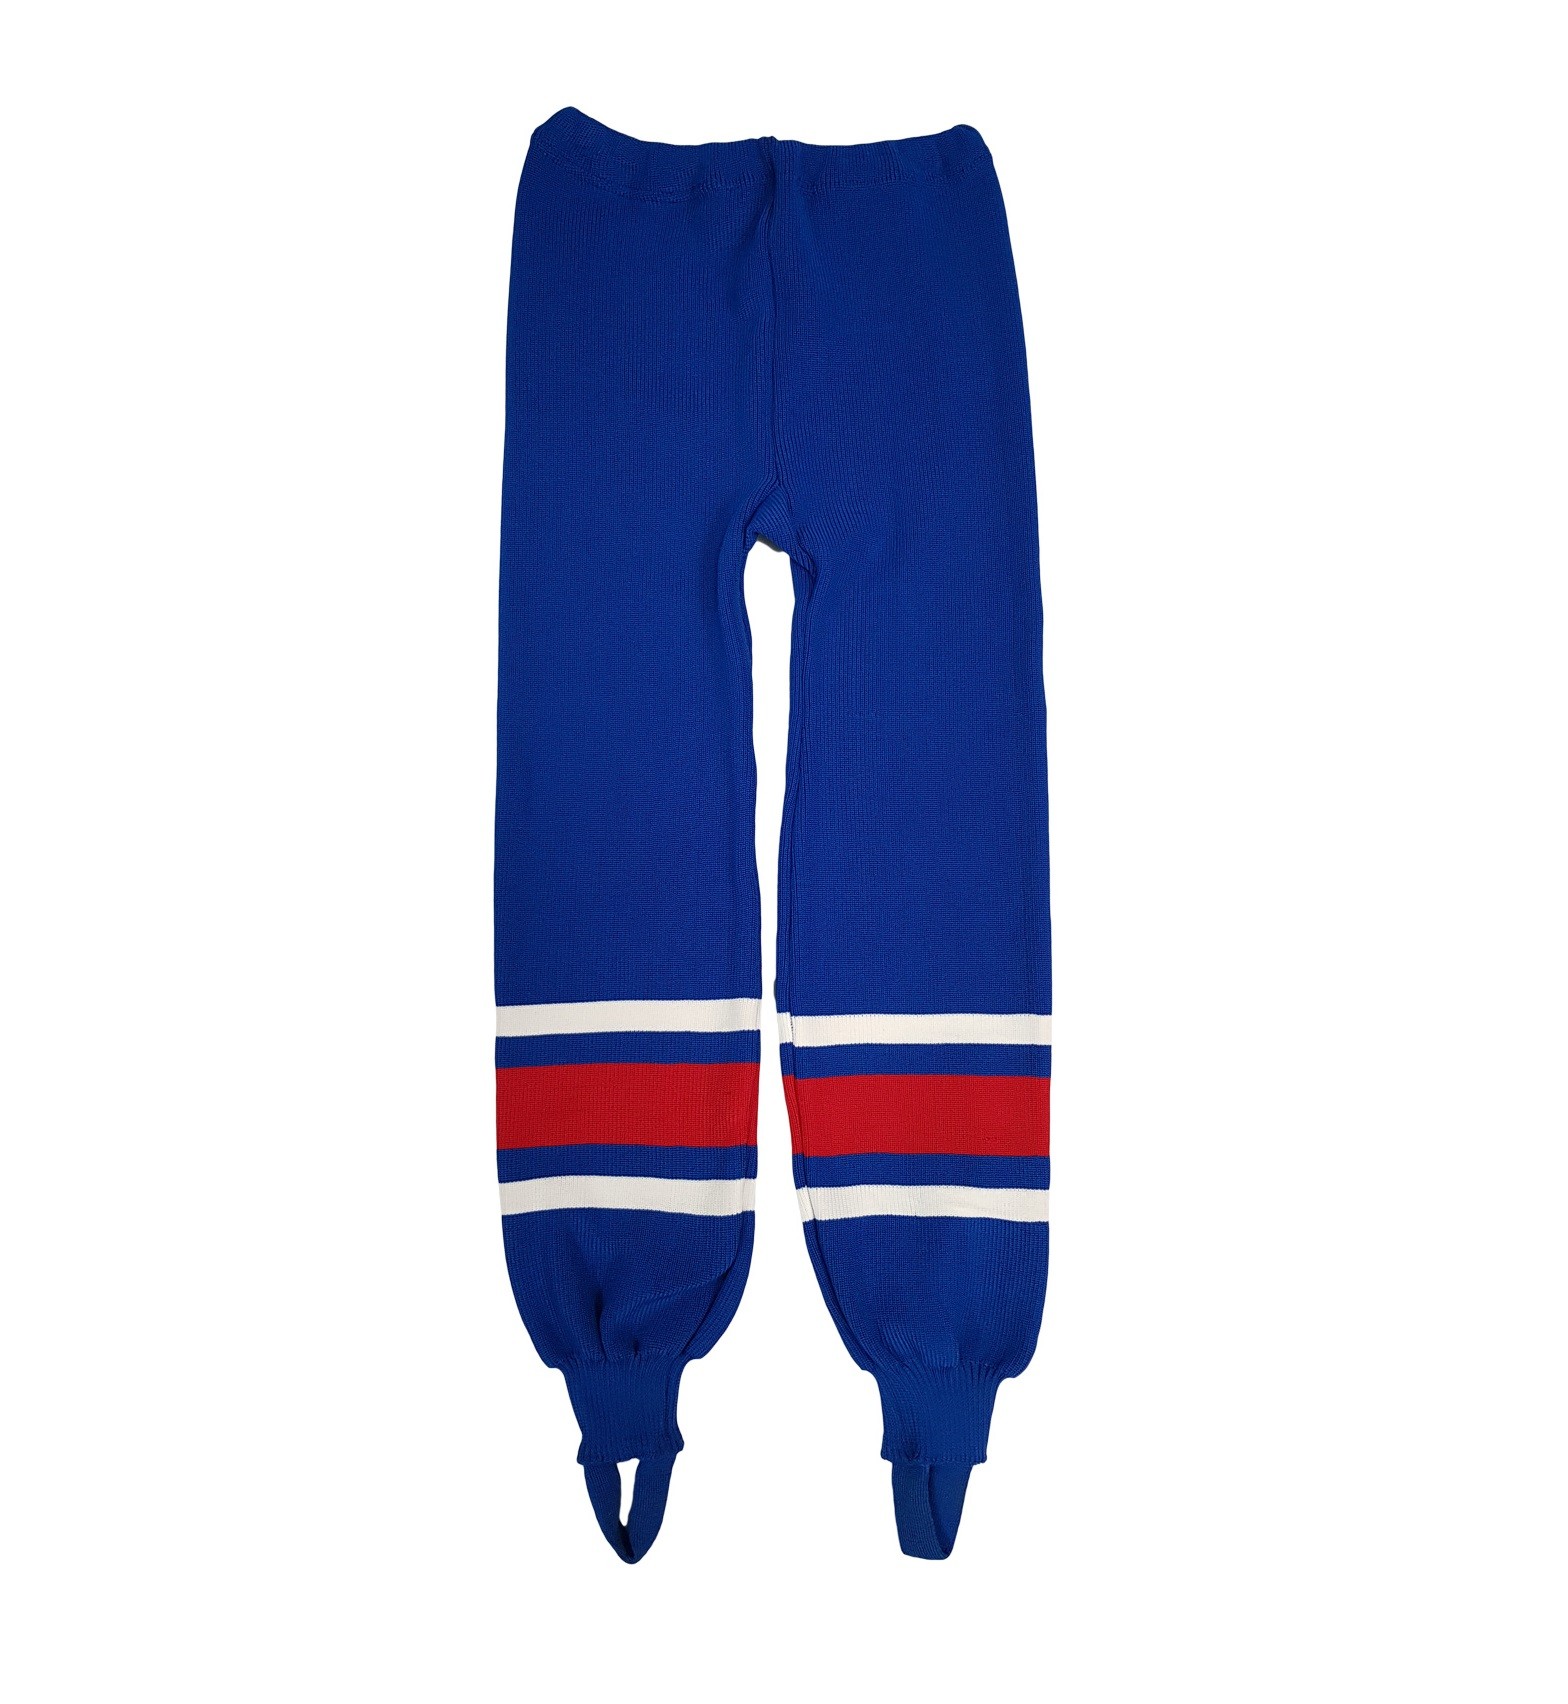 HOKEJAM Knit Junior Hockey Sock Pants